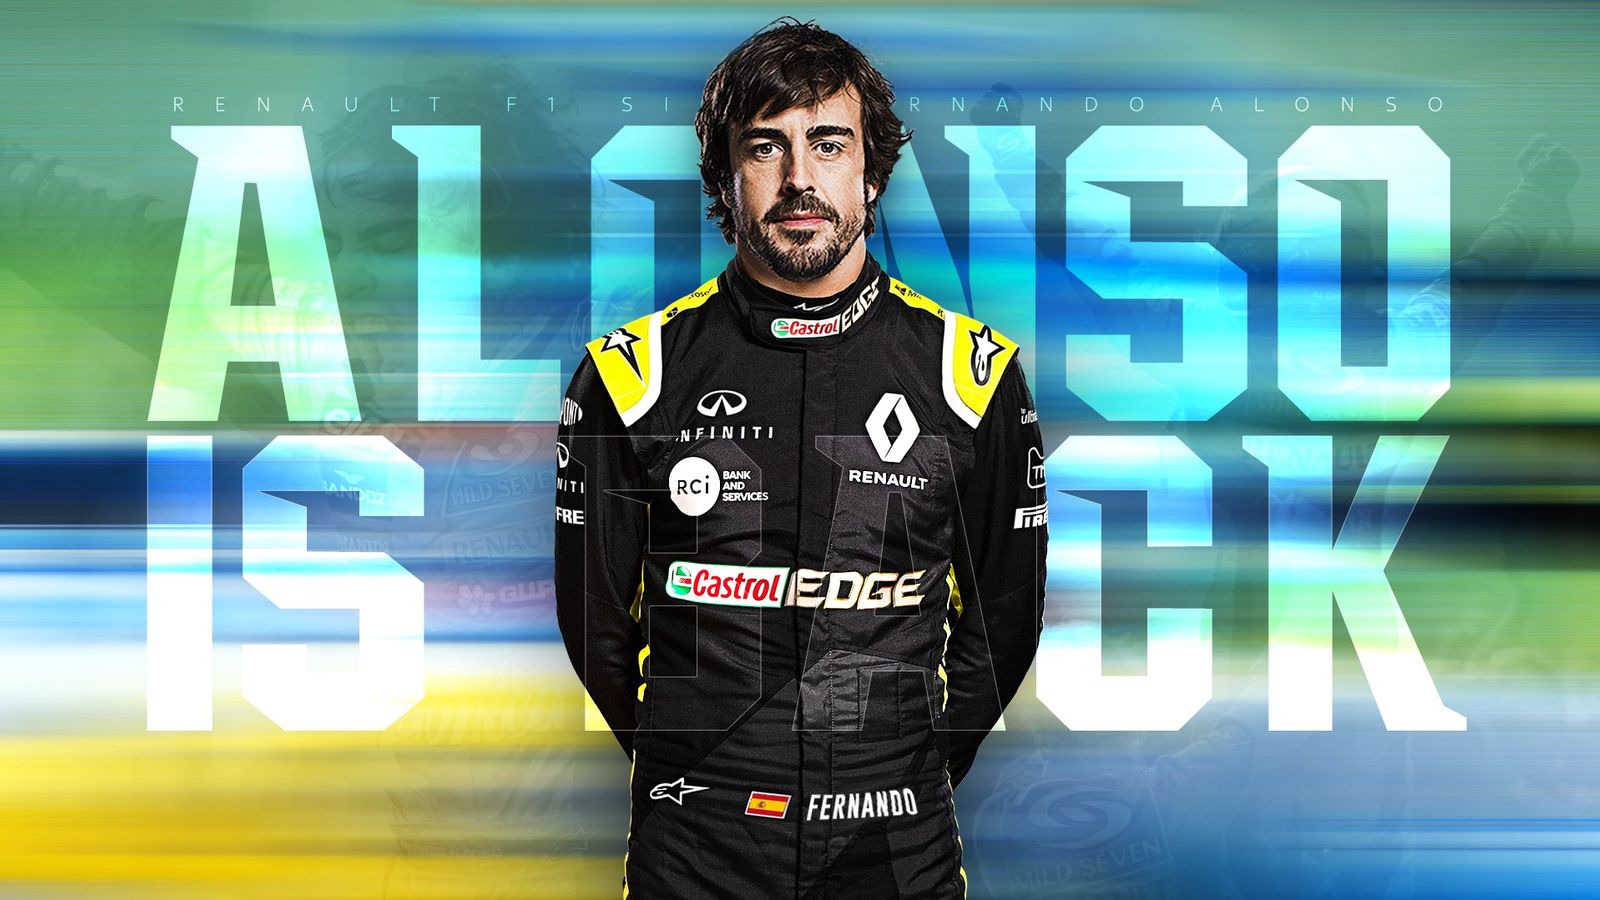 Điểm mặt 20 tay đua chính tham dự F1 mùa giải 2021 Fernando Alonso .jpg